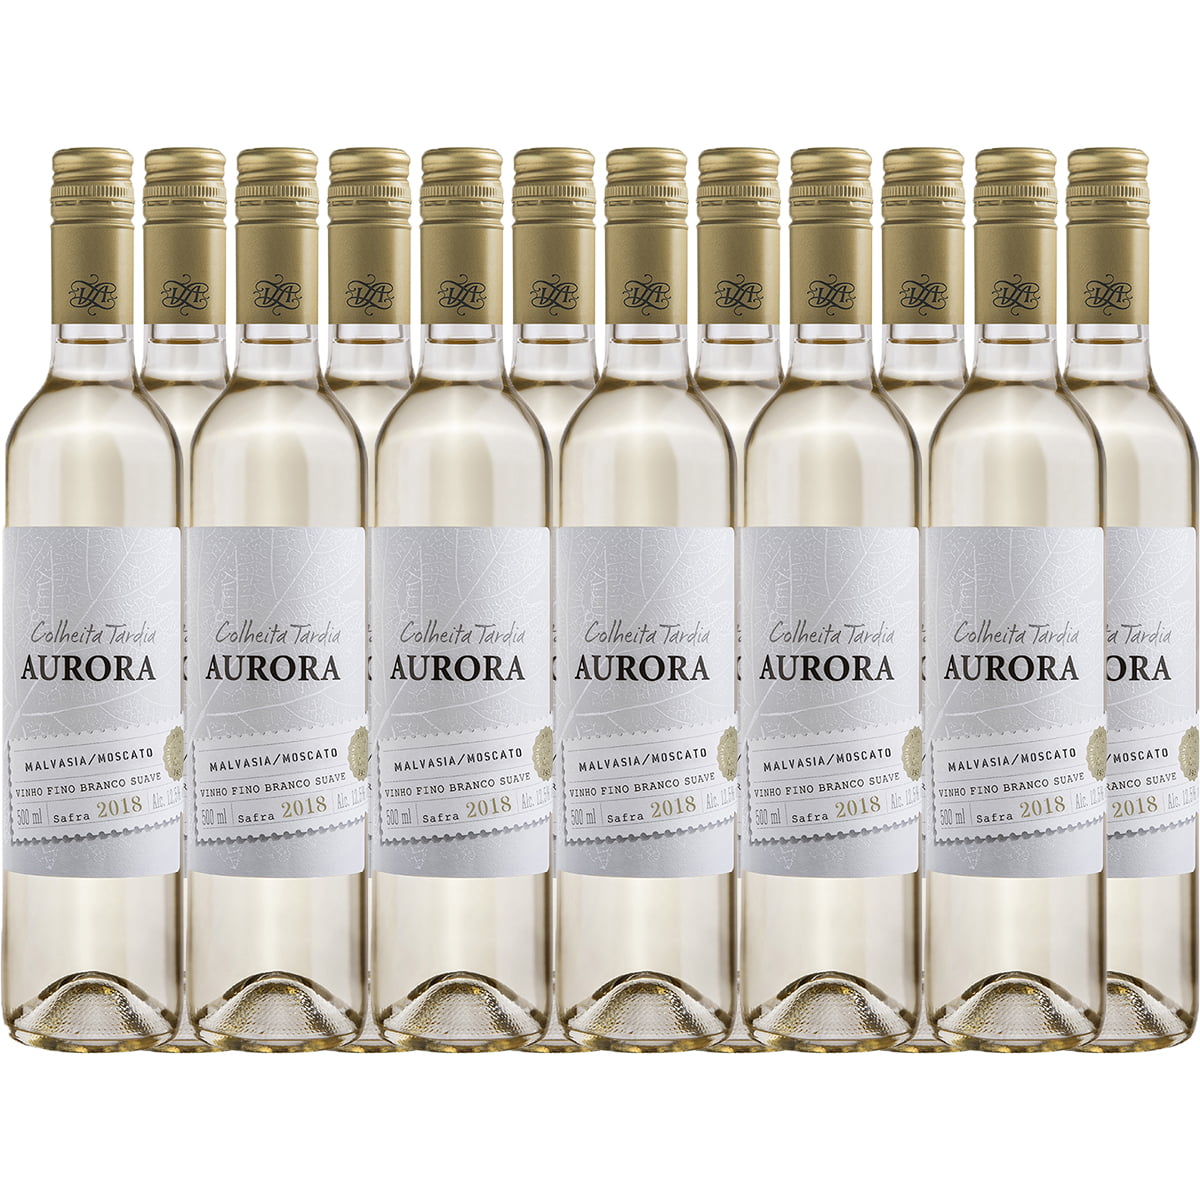 Aurora Colheita Tardia Malvasia/Moscato Vinho Branco Suave 500ml C/12